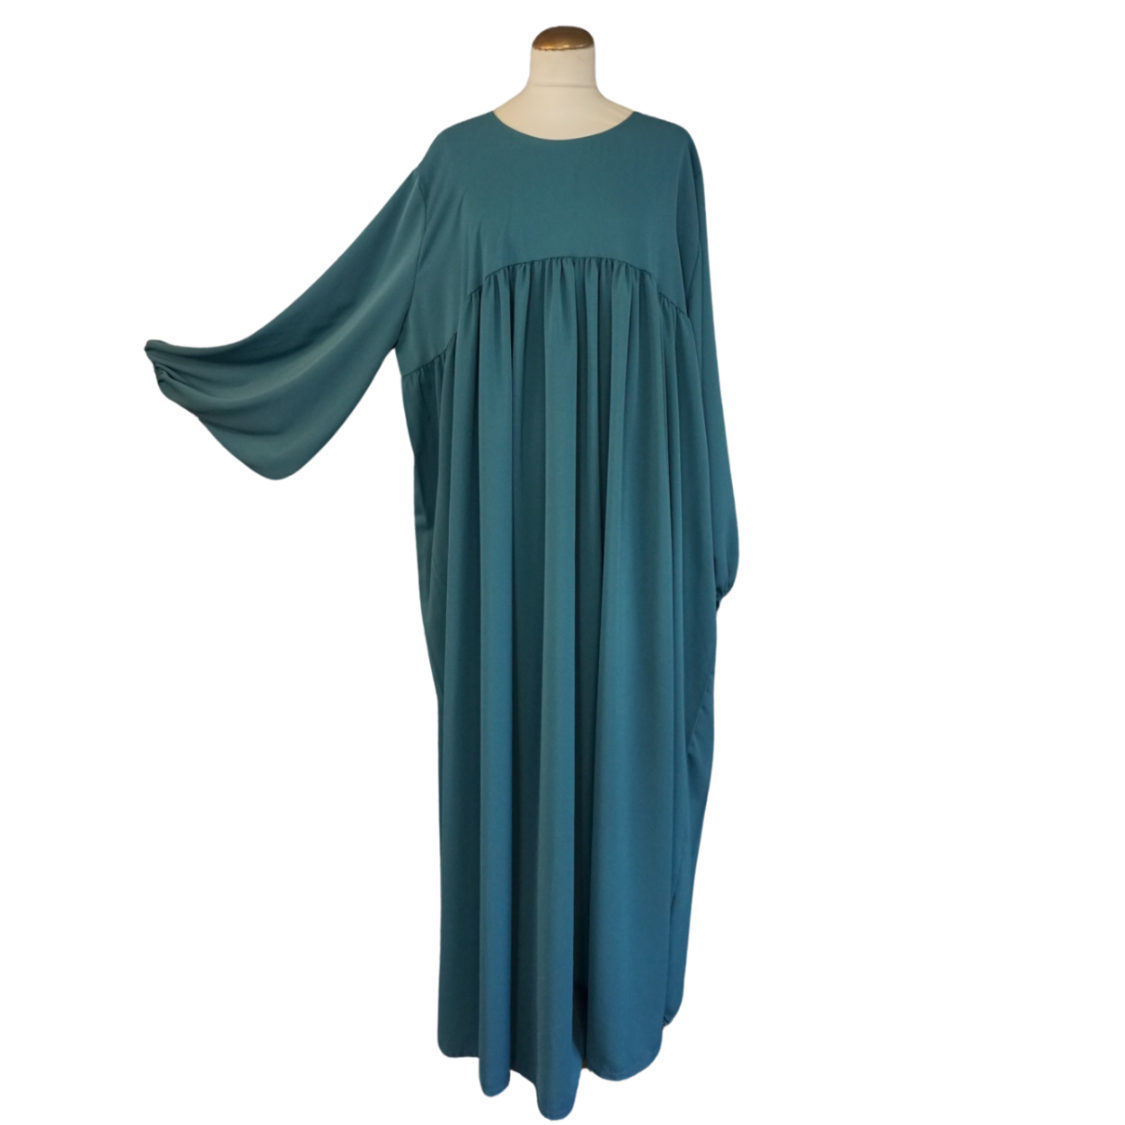 Abaya mit Puffärmeln - leichtes Material